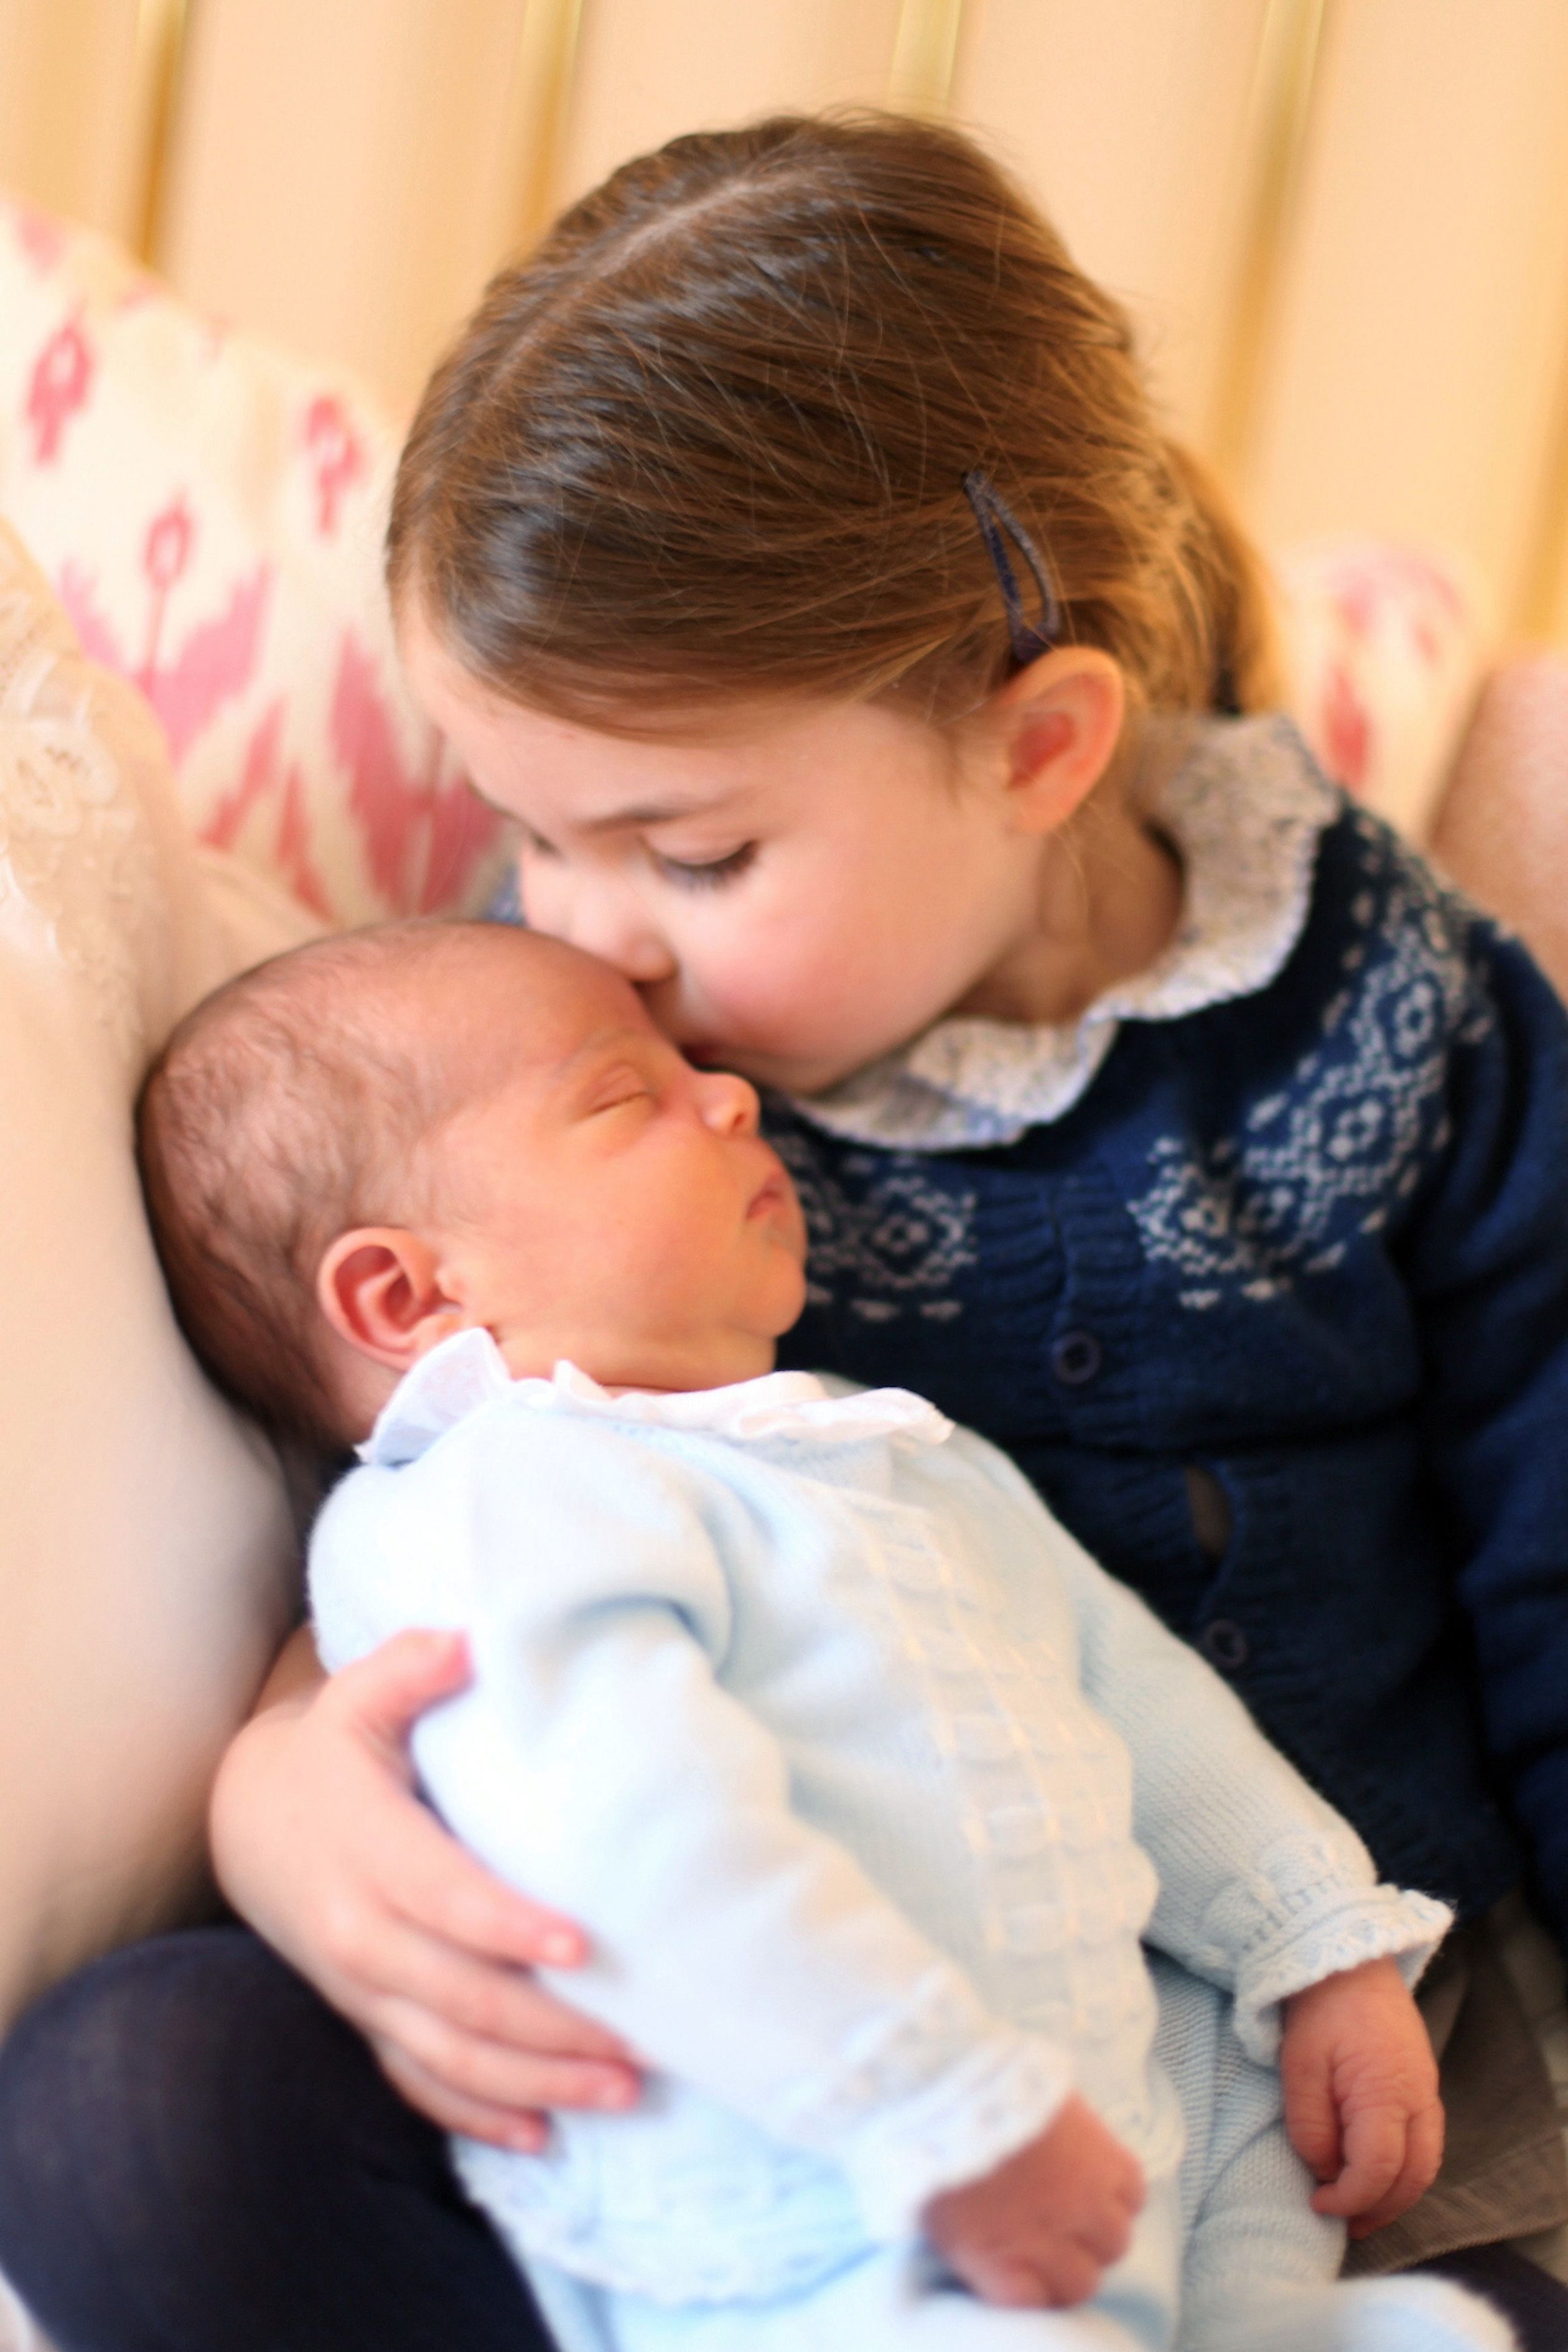 Een trotse zus! Prinses Charlotte op haar derde verjaardag met haar pasgeboren broertje (2 mei